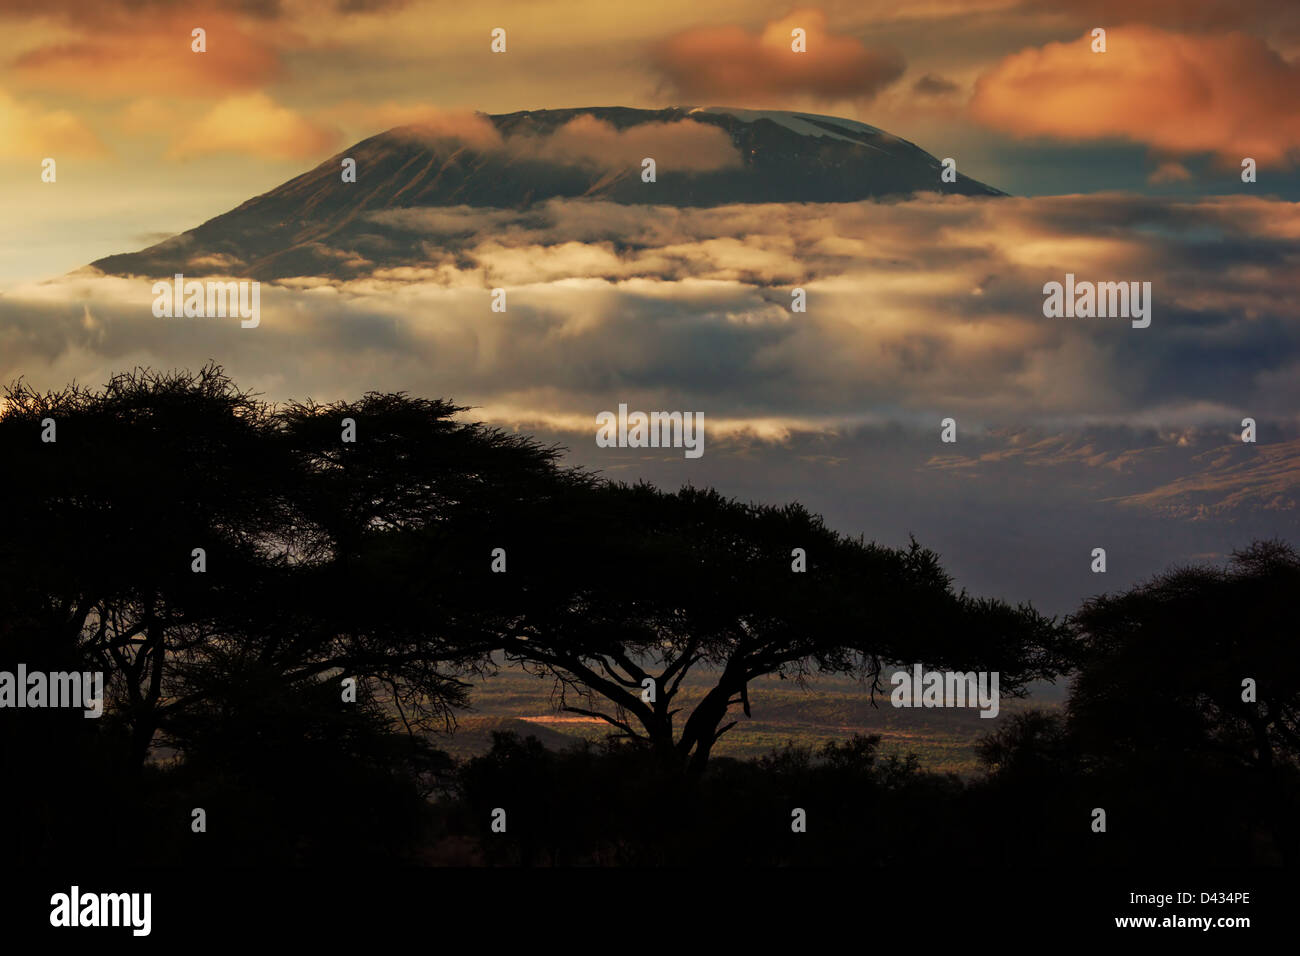 Afrika-Landschaft - Mount Kilimanjaro und Wolken Zeile bei Sonnenuntergang, Blick vom Savannenlandschaft in Amboseli, Kenia, Afrika Stockfoto